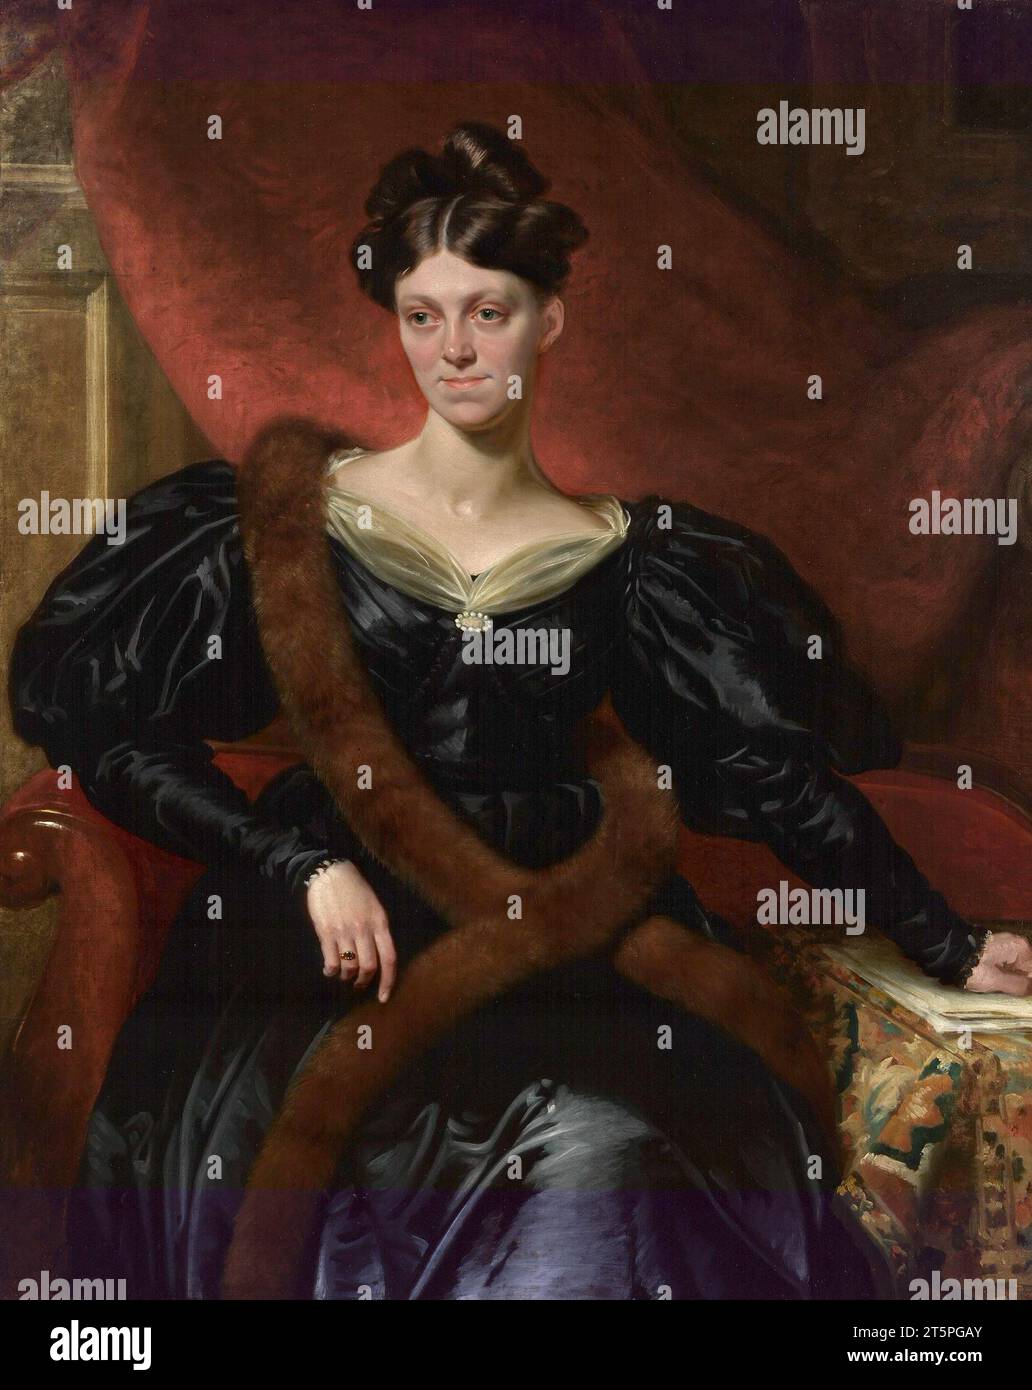 Harriet Martineau. Portrait de la théoricienne sociale anglaise Harriet Martineau (1802-1876) par Richard Evans, huile sur toile, c. 1834 Banque D'Images